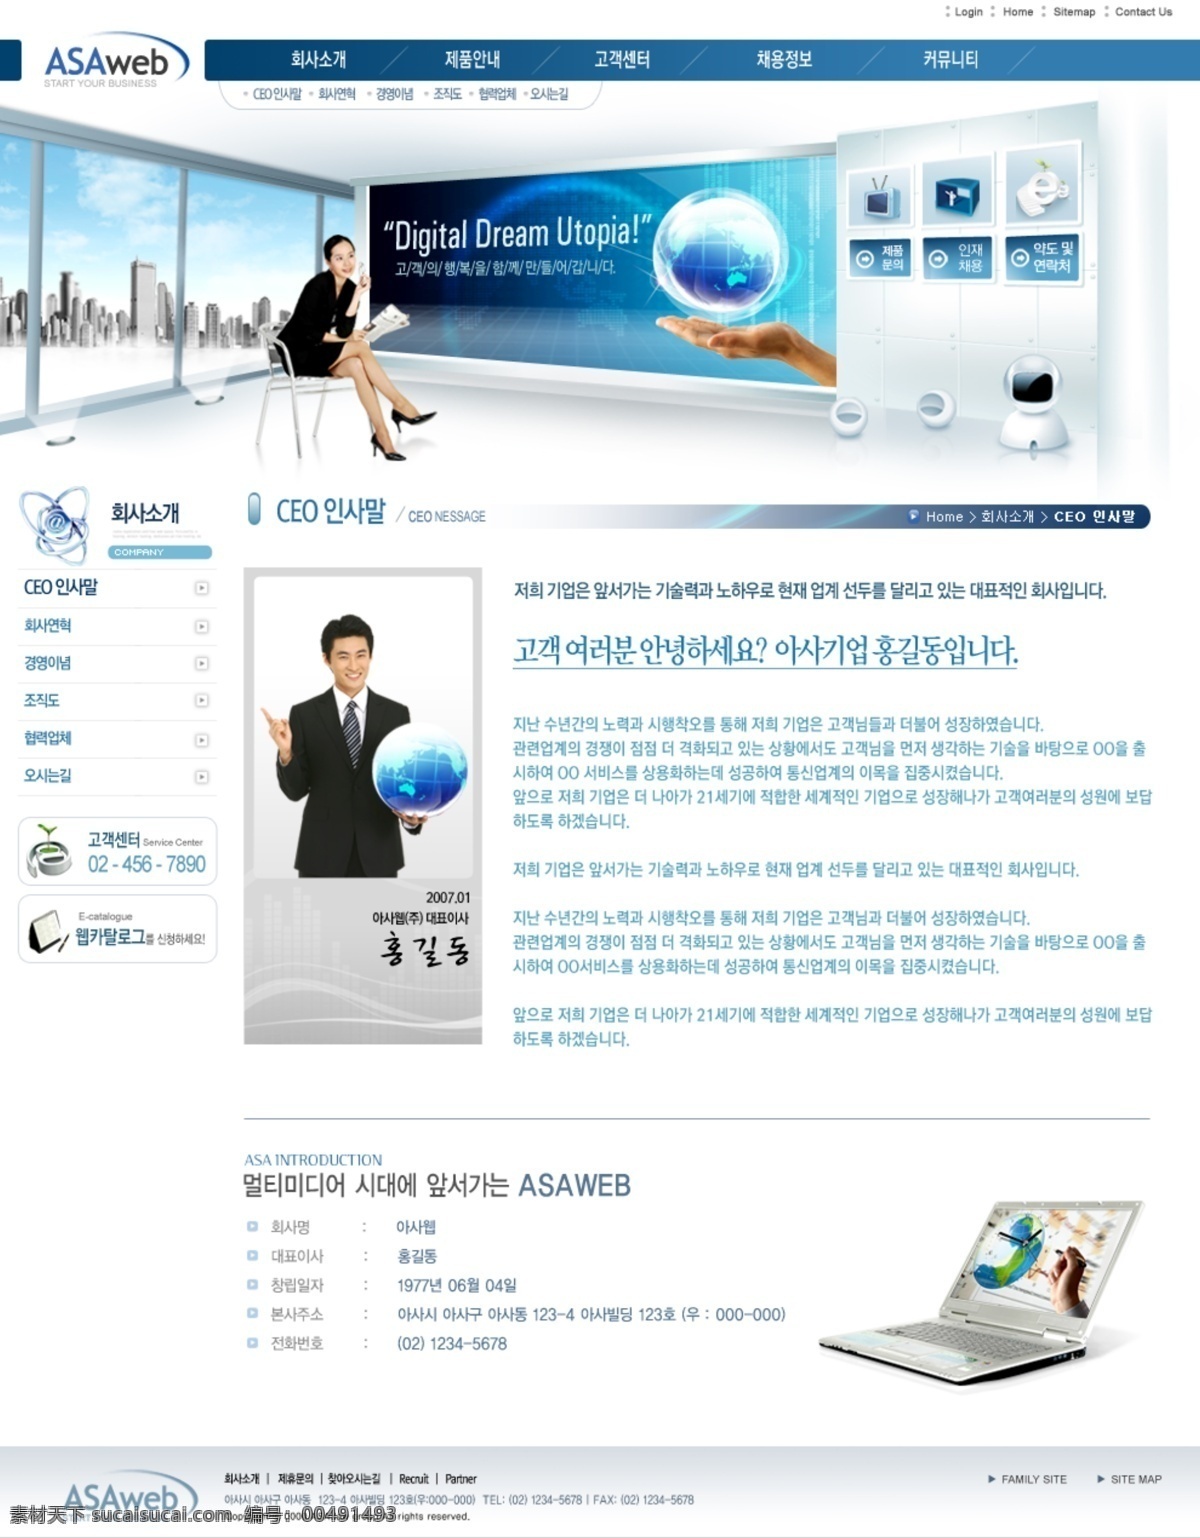 办公设备 笔记本 公司网站 韩国女人 韩国网页 韩国网站 界面设计 网页 网页版式 网页模板 职业人物 网页设计 网页设计模板 ui设 网页素材